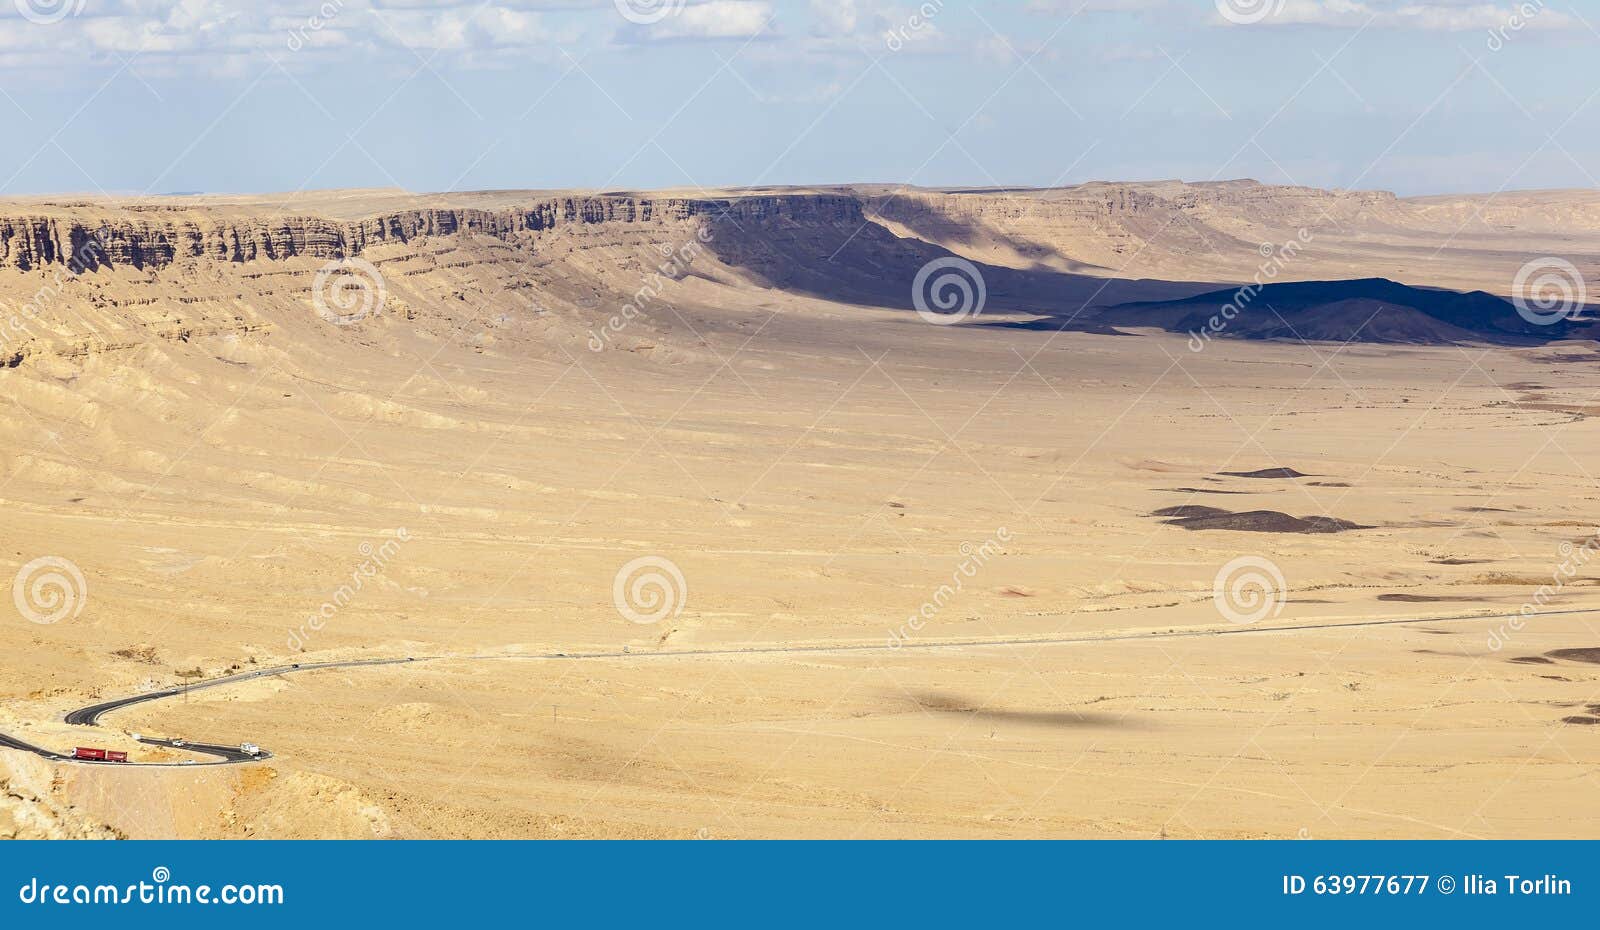 makhtesh ramon landscape. negev desert. israel